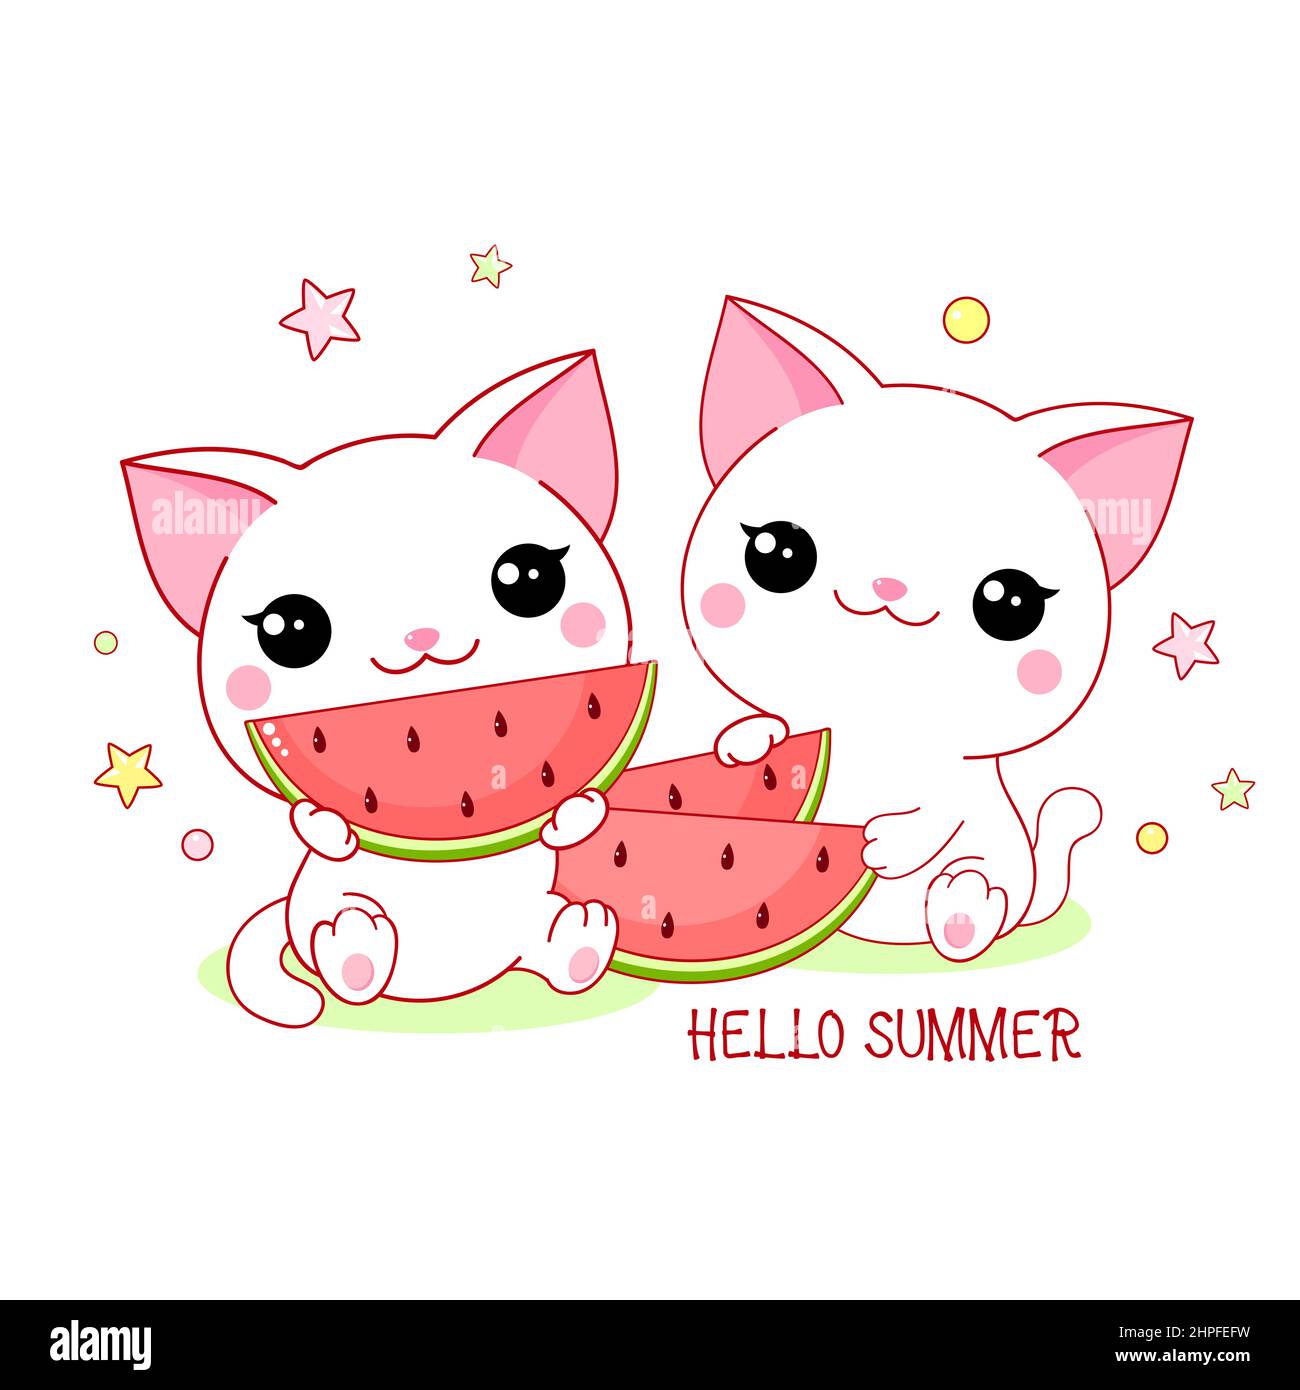 Deux chats blancs mignons avec de la pastèque. Inscription Bonjour été. Le petit kitty kawaii est heureux de manger de la pastèque. Bonne heure d'été. Les amis ont pique-nique Illustration de Vecteur